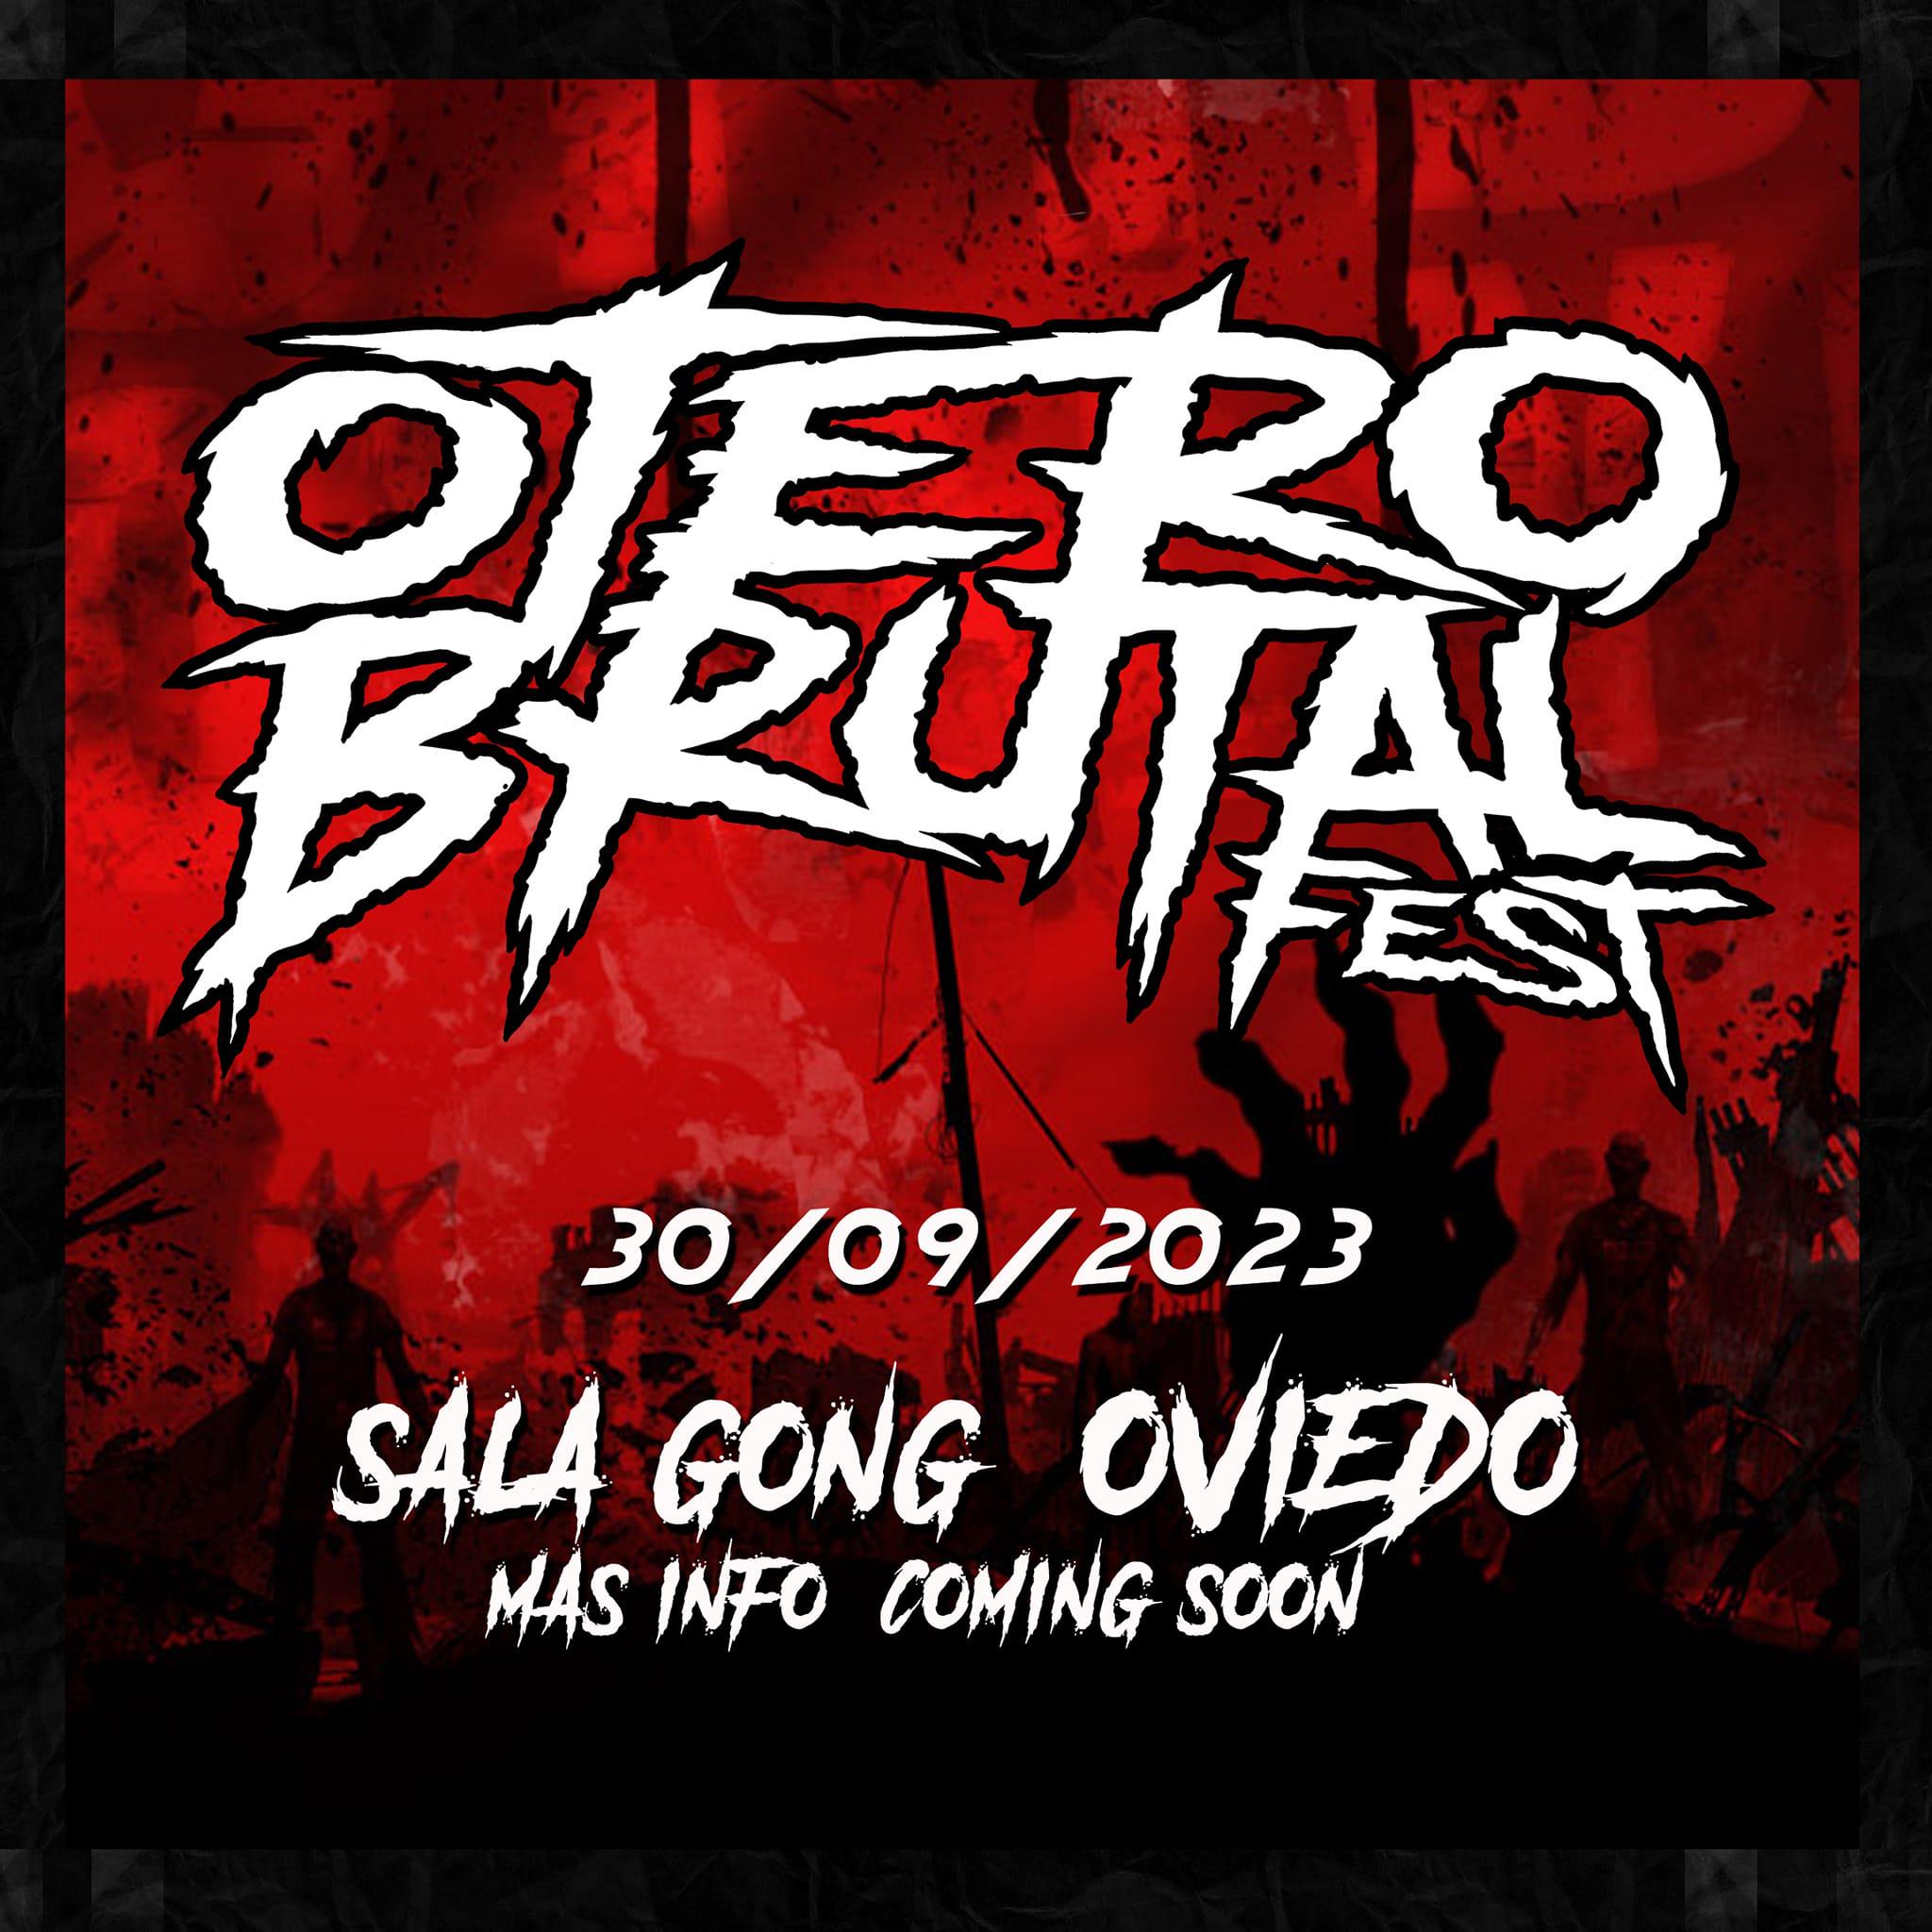 Otero Brutal Fest